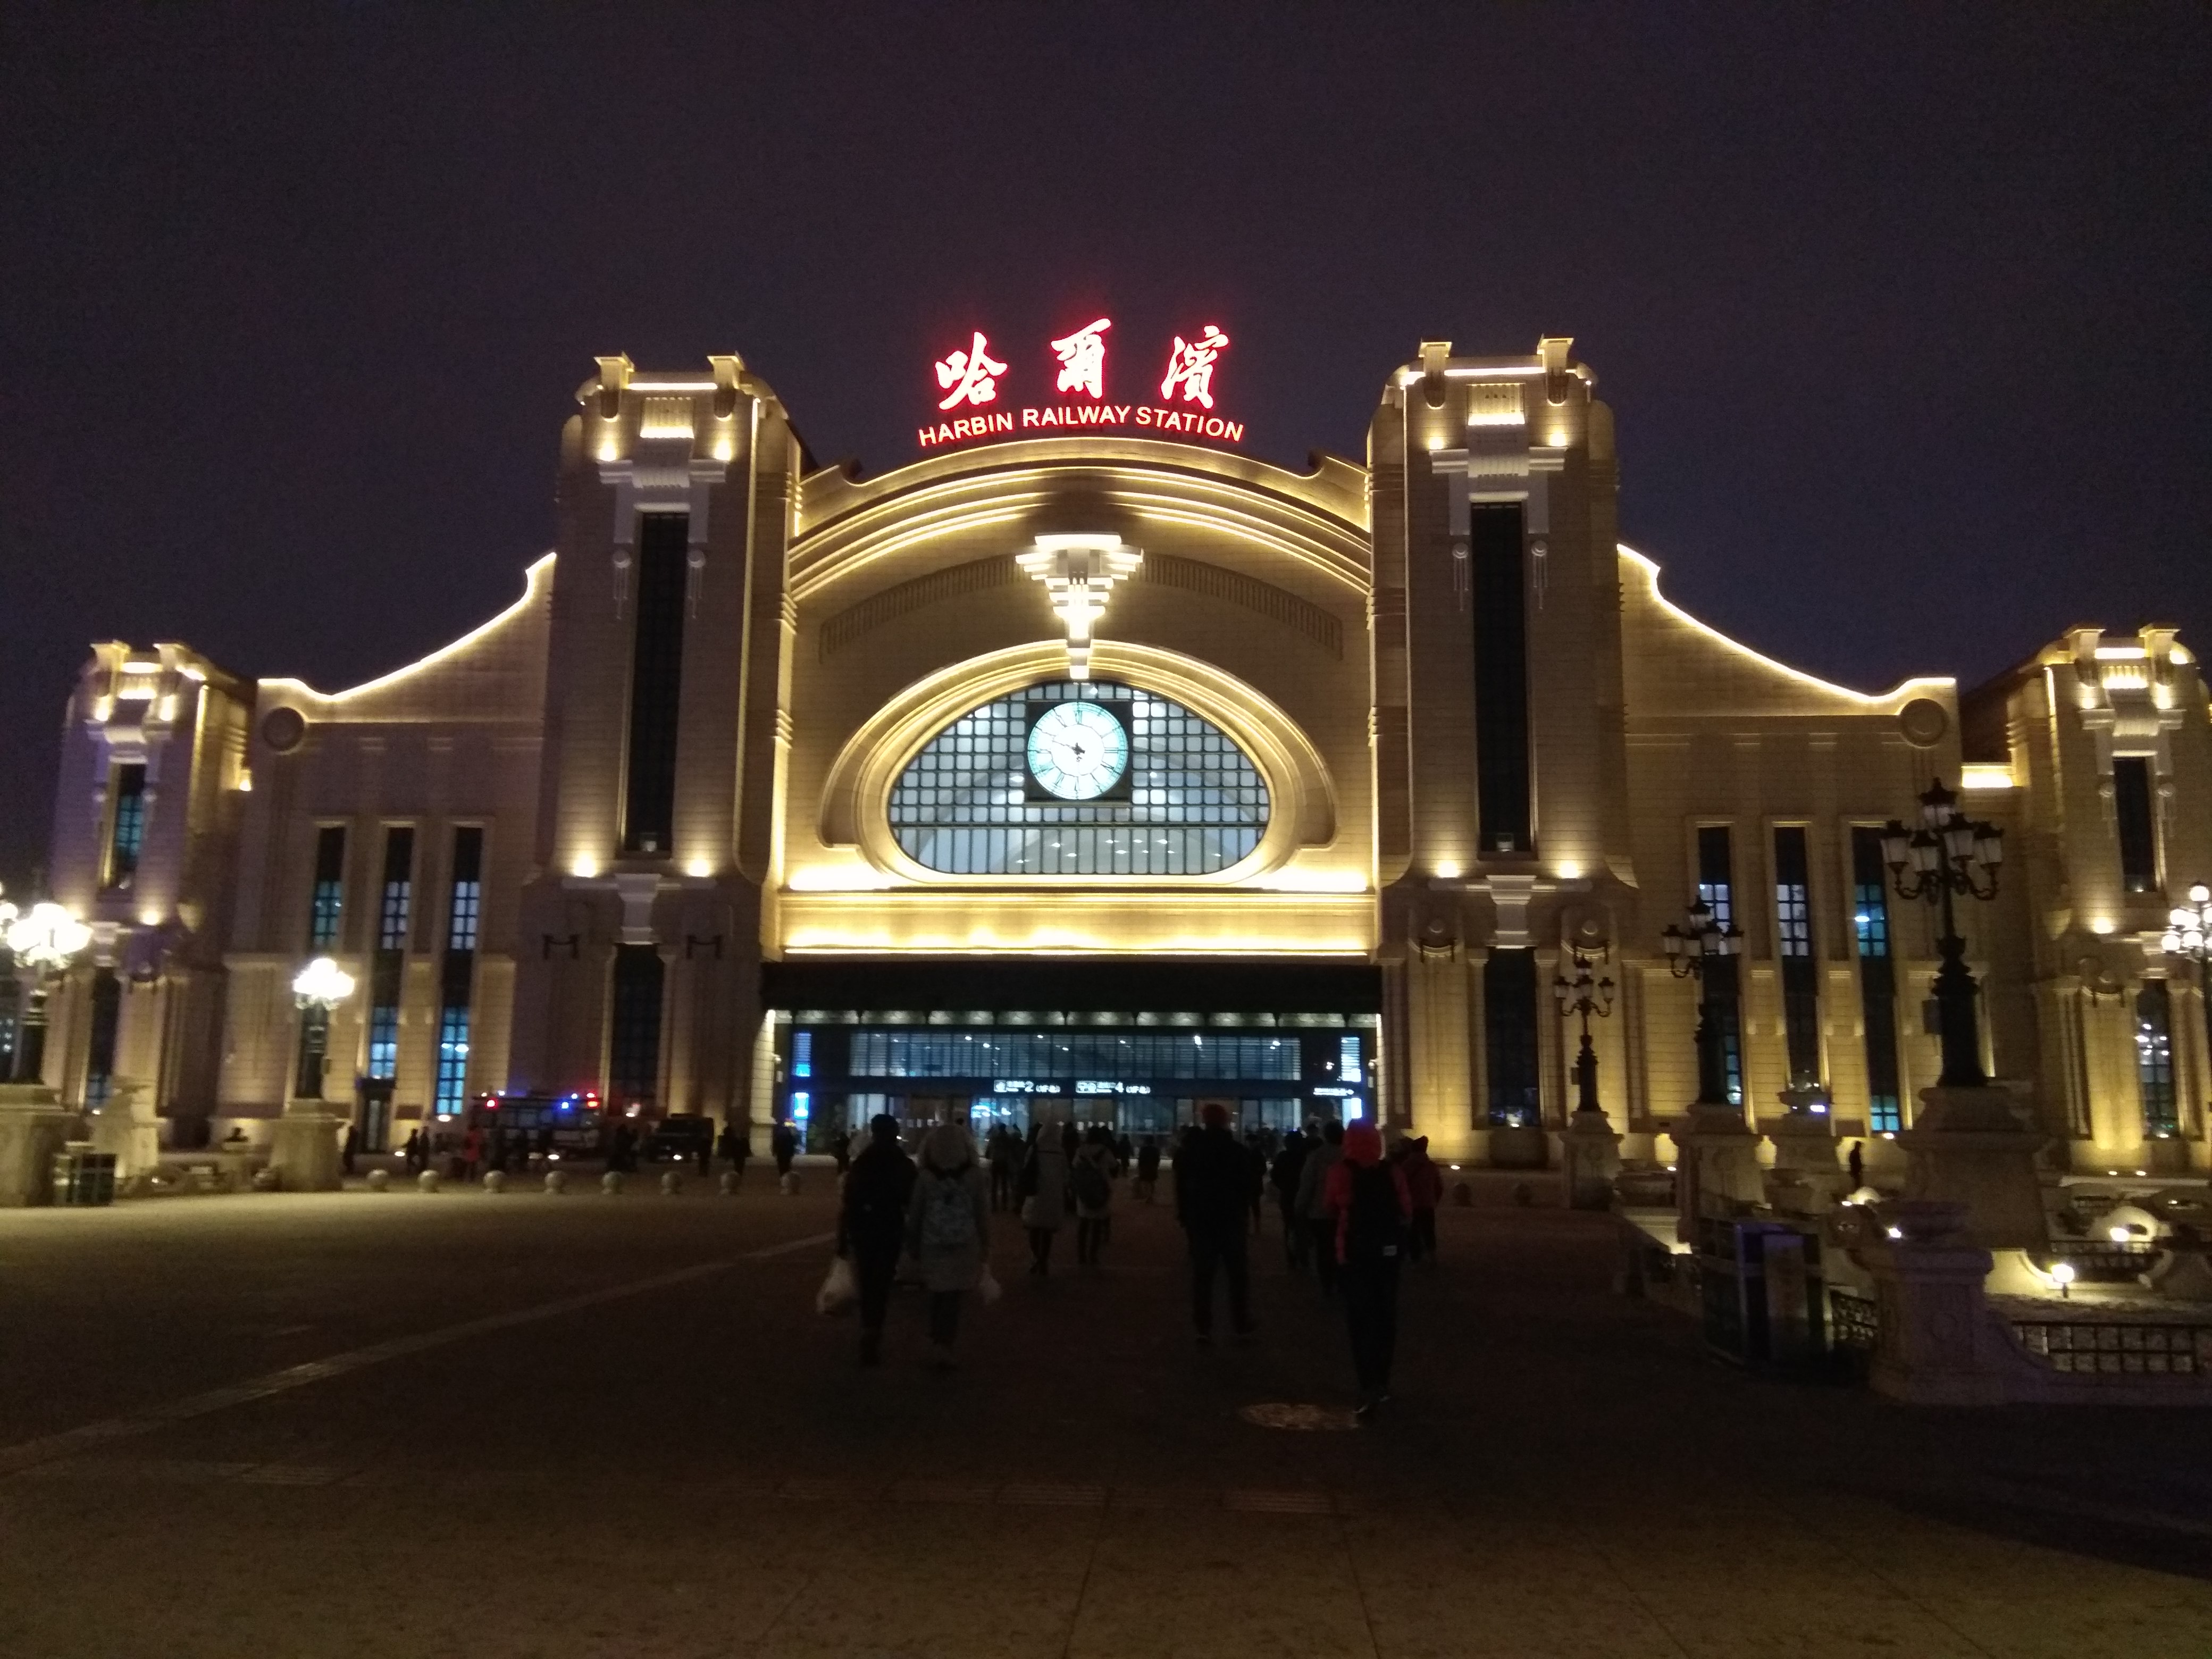 哈尔滨车站冬天图片图片